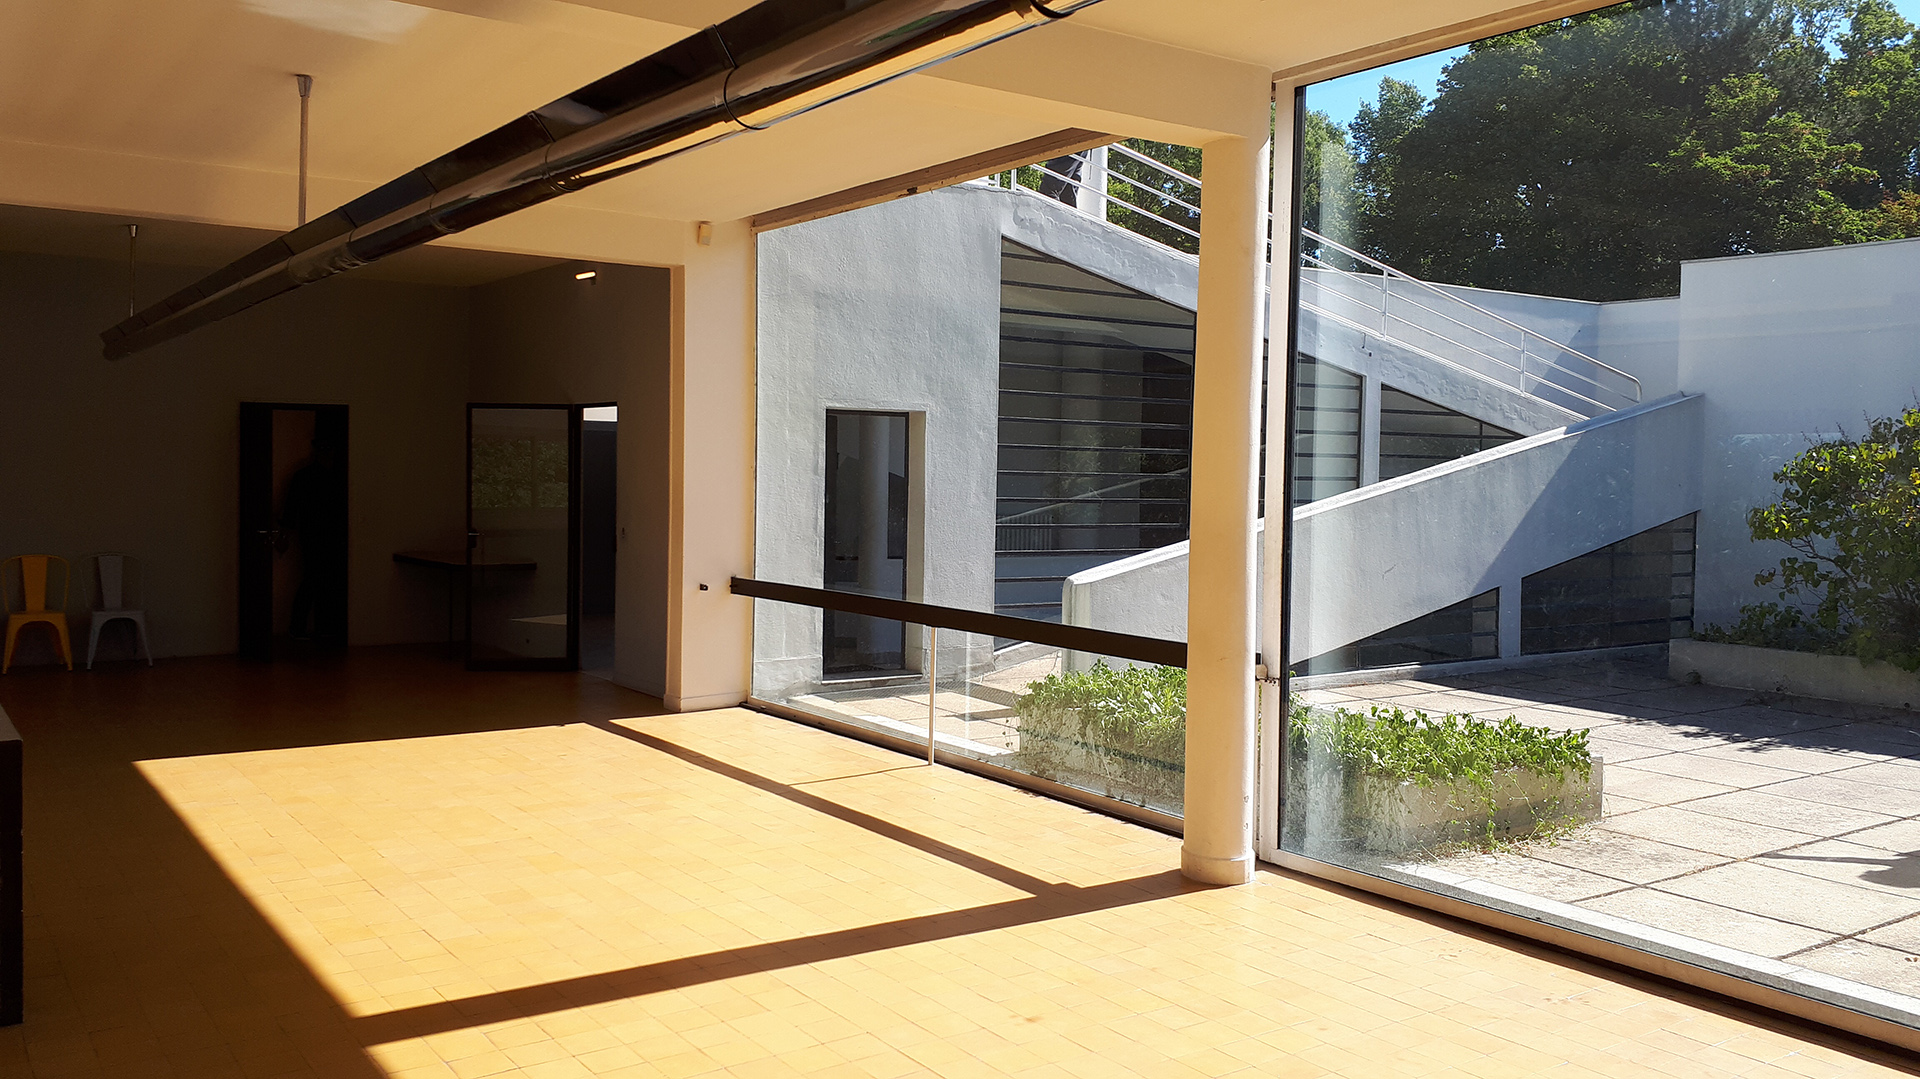 Los cinco puntos de Le Corbusier se pueden observar muy claramente en Villa Savoye (Wikipedia)